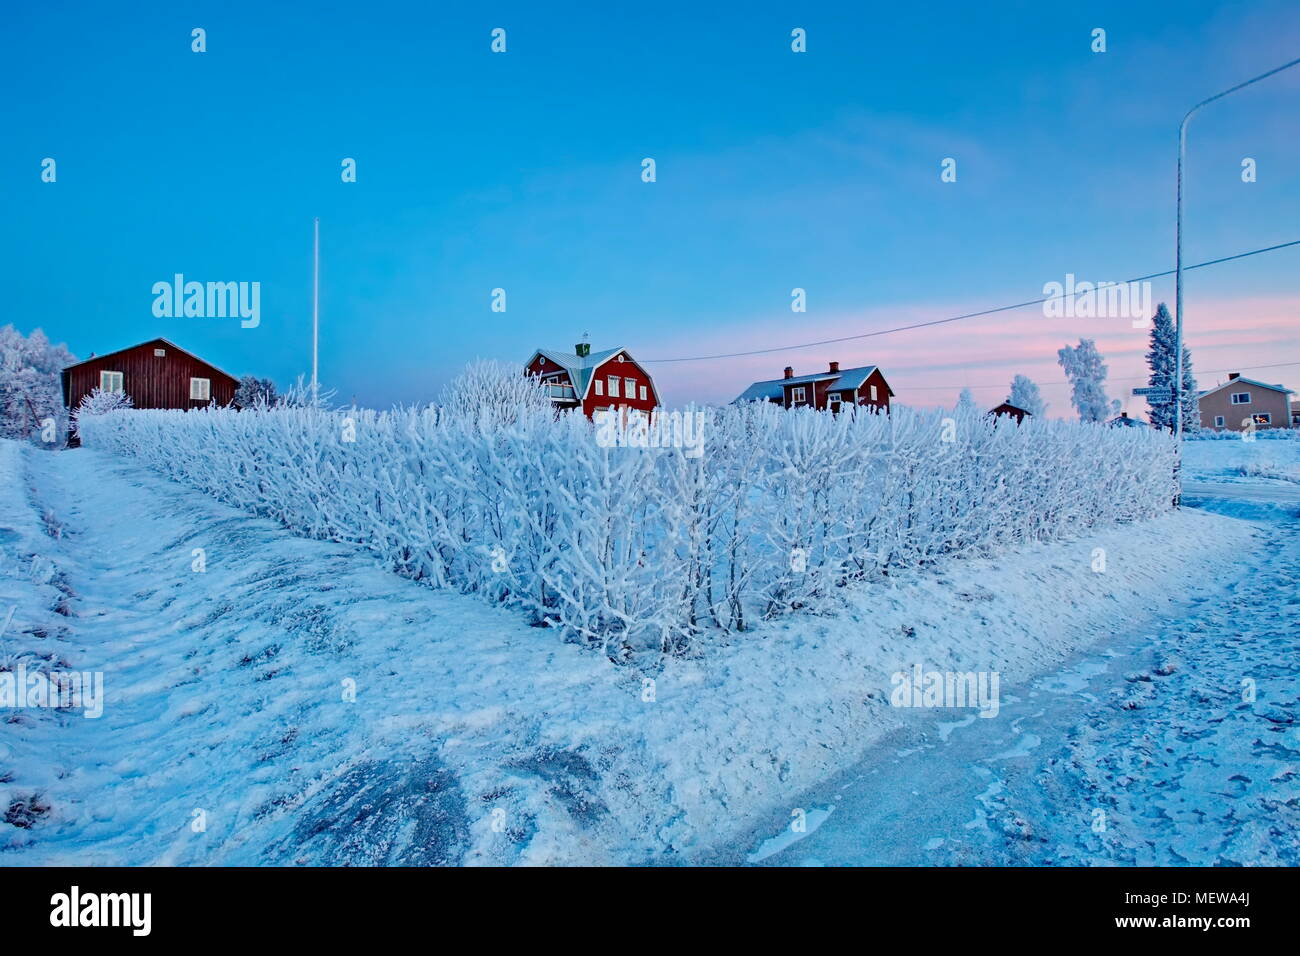 Le givre couvre un village à l'heure bleue sur une froide journée d'hiver. Bredbyn, Espagne, Suède. Bredbyn, Espagne, Suède Banque D'Images